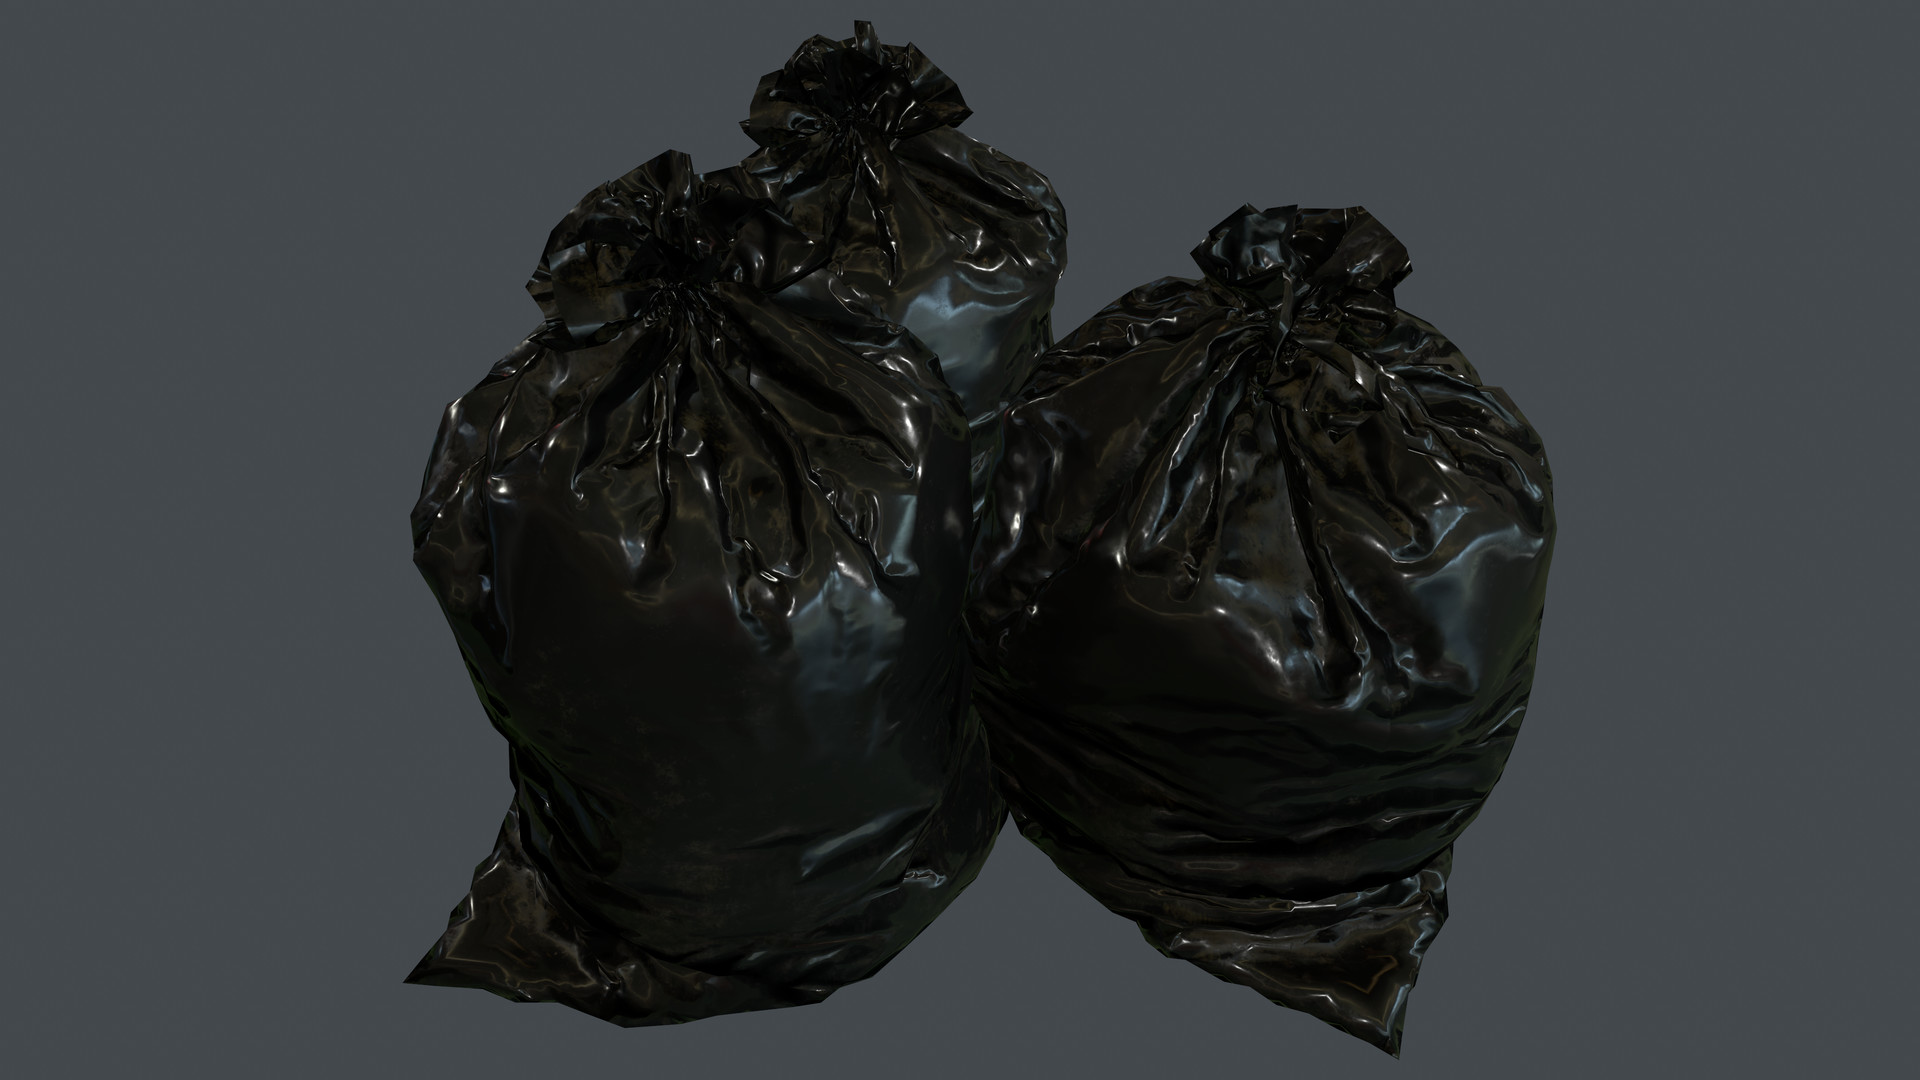 ArtStation - Trash bag